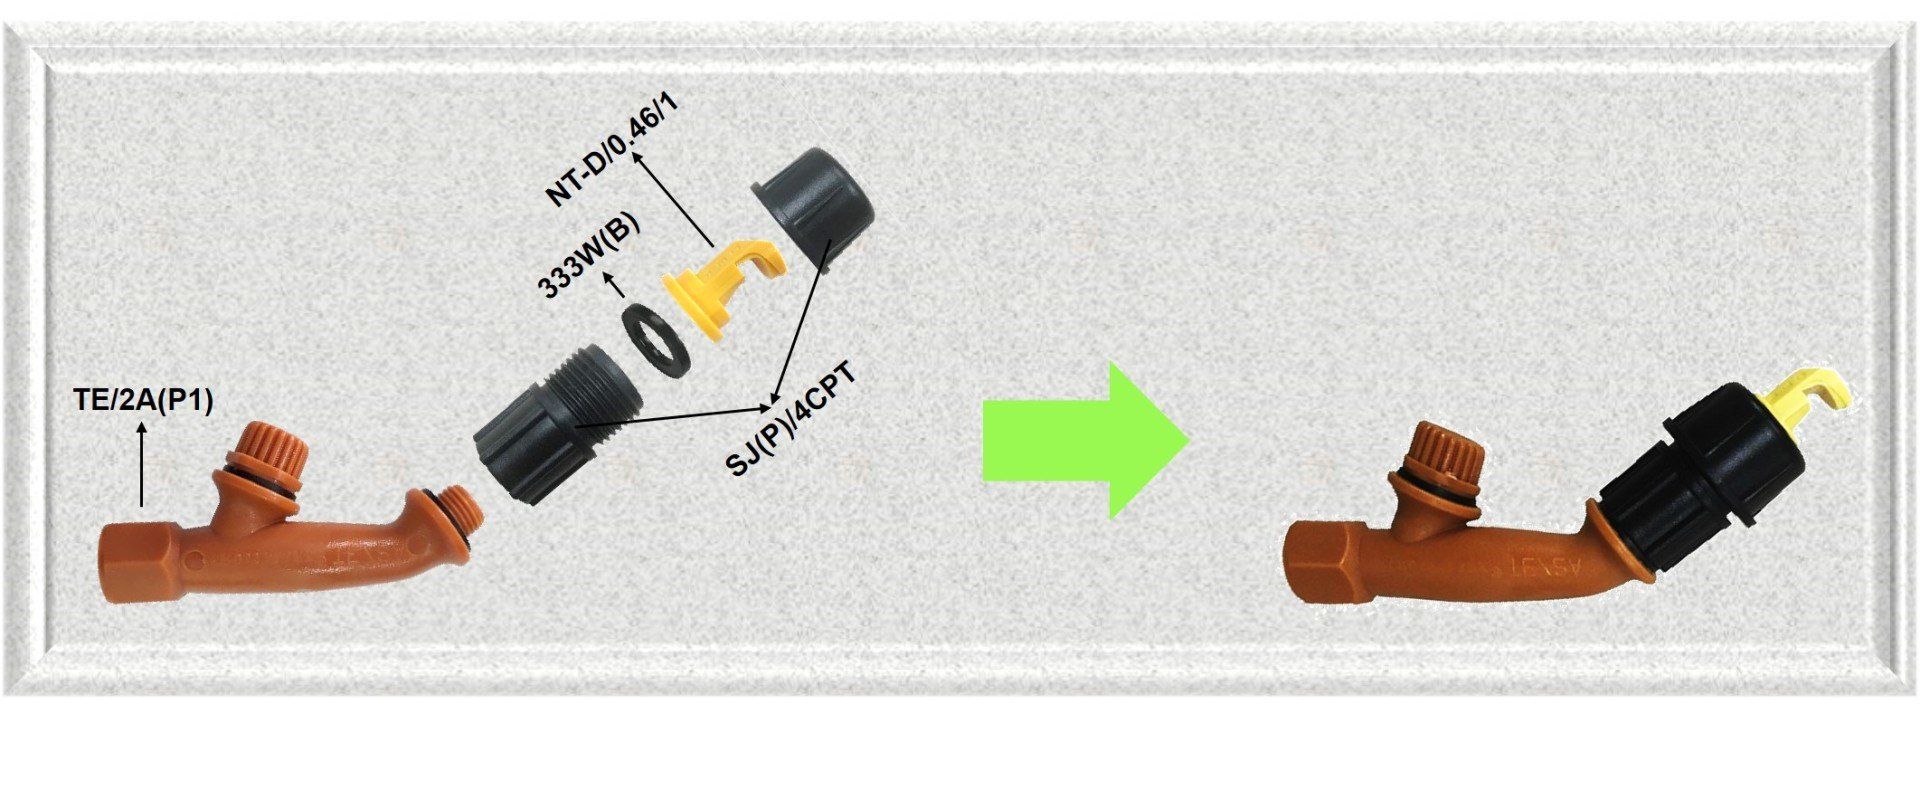 assembly deflector nozzle, assembly jun chong nozzle, pemasangan muncung jun chong, pemasangan muncung deflector.